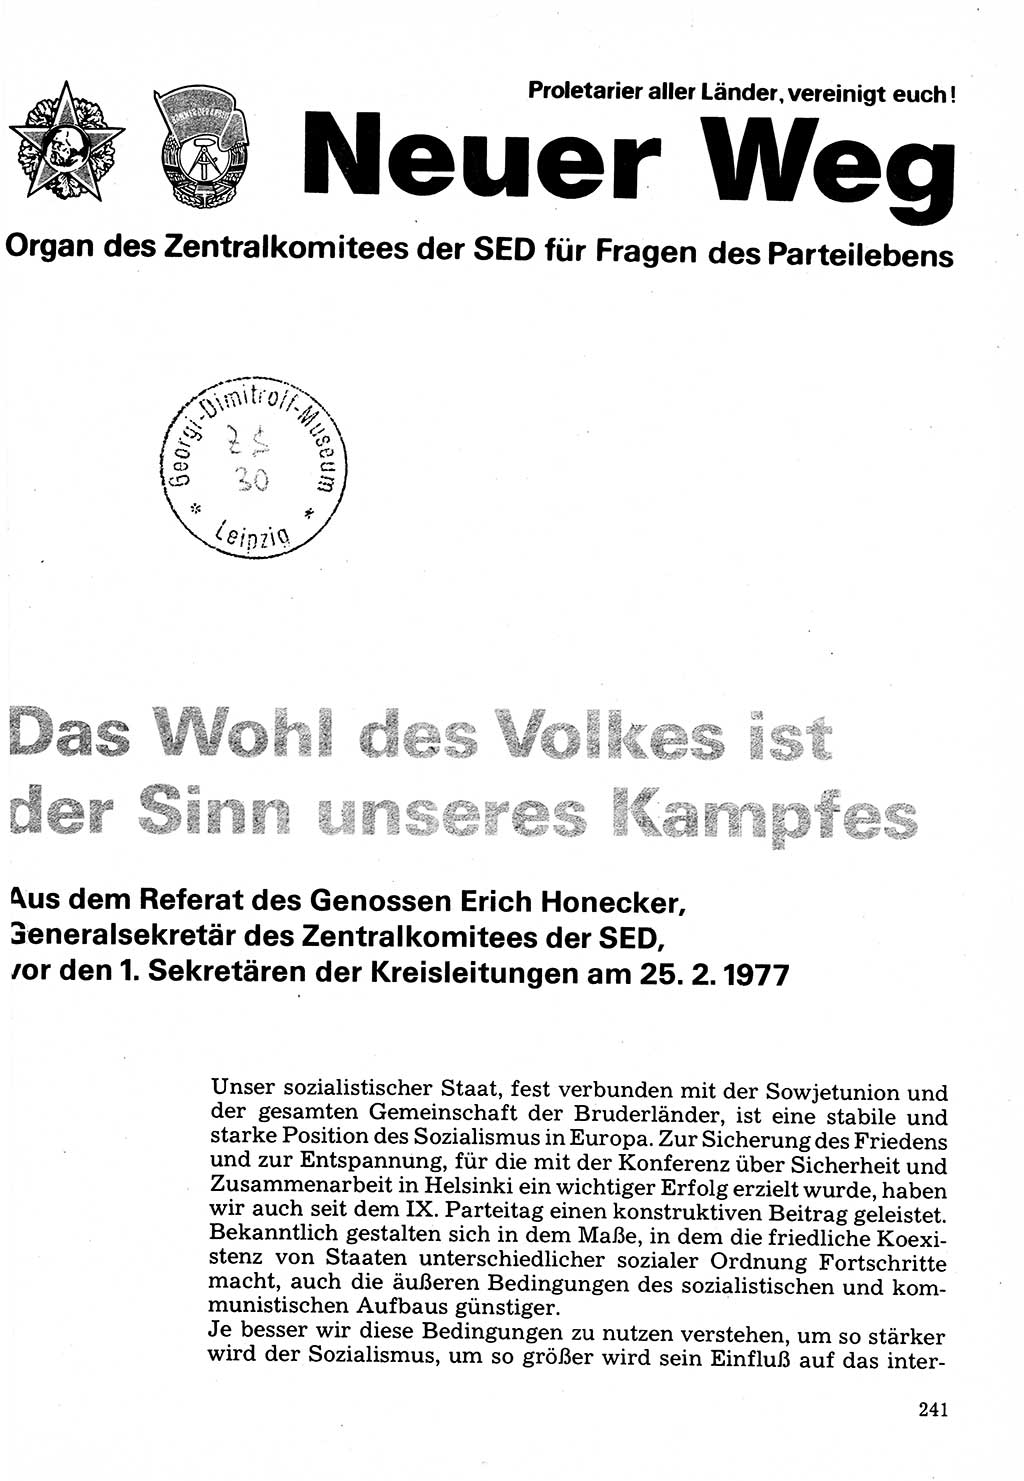 Neuer Weg (NW), Organ des Zentralkomitees (ZK) der SED (Sozialistische Einheitspartei Deutschlands) für Fragen des Parteilebens, 32. Jahrgang [Deutsche Demokratische Republik (DDR)] 1977, Seite 241 (NW ZK SED DDR 1977, S. 241)